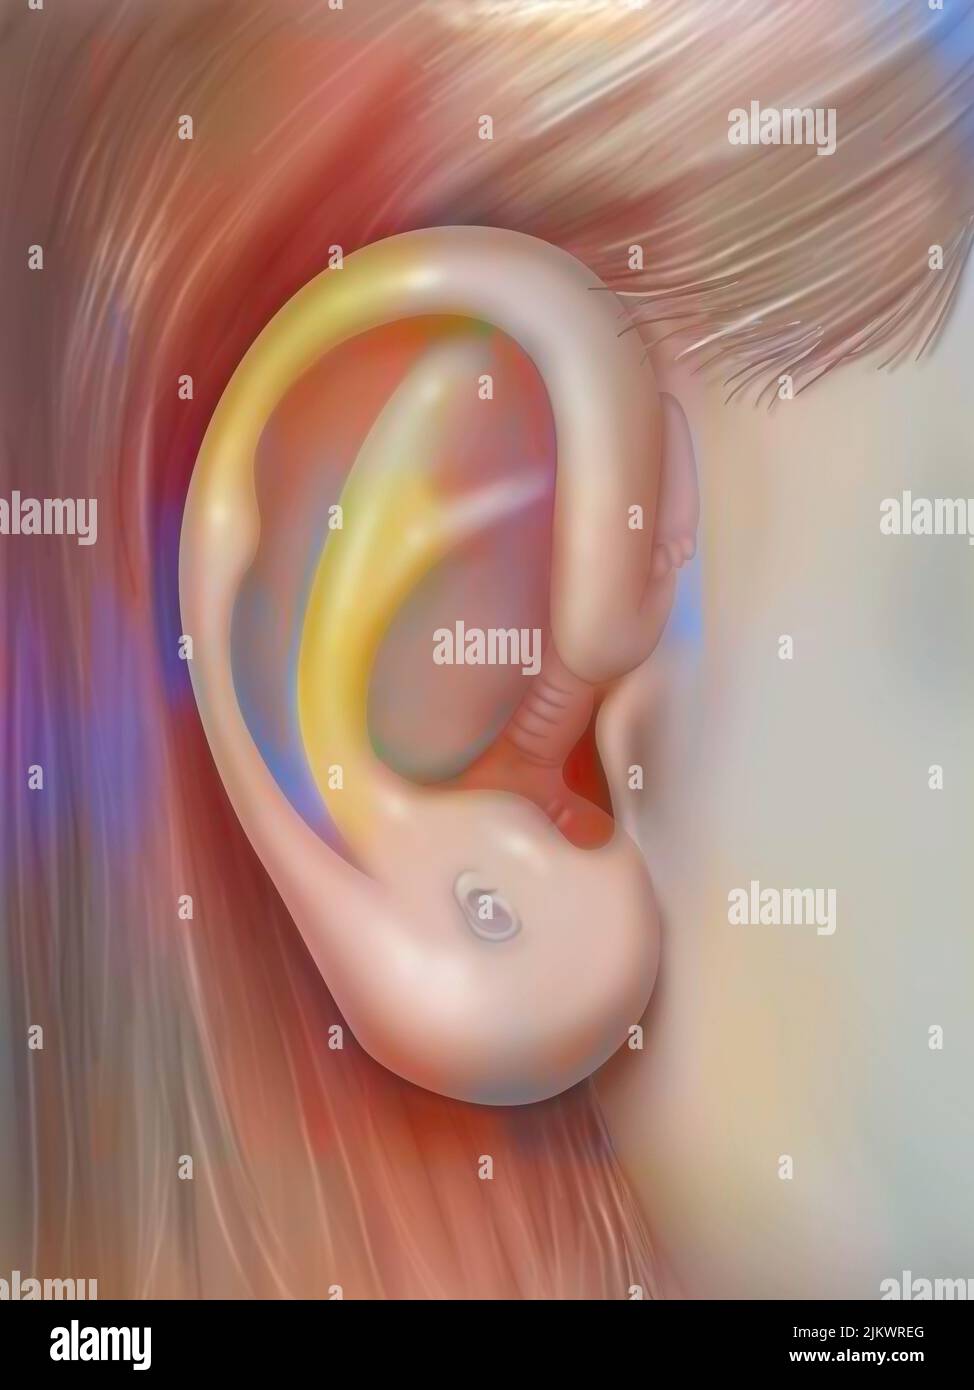 Auriculoterapia: Oído y evidencia de su semejanza con un feto. Foto de stock